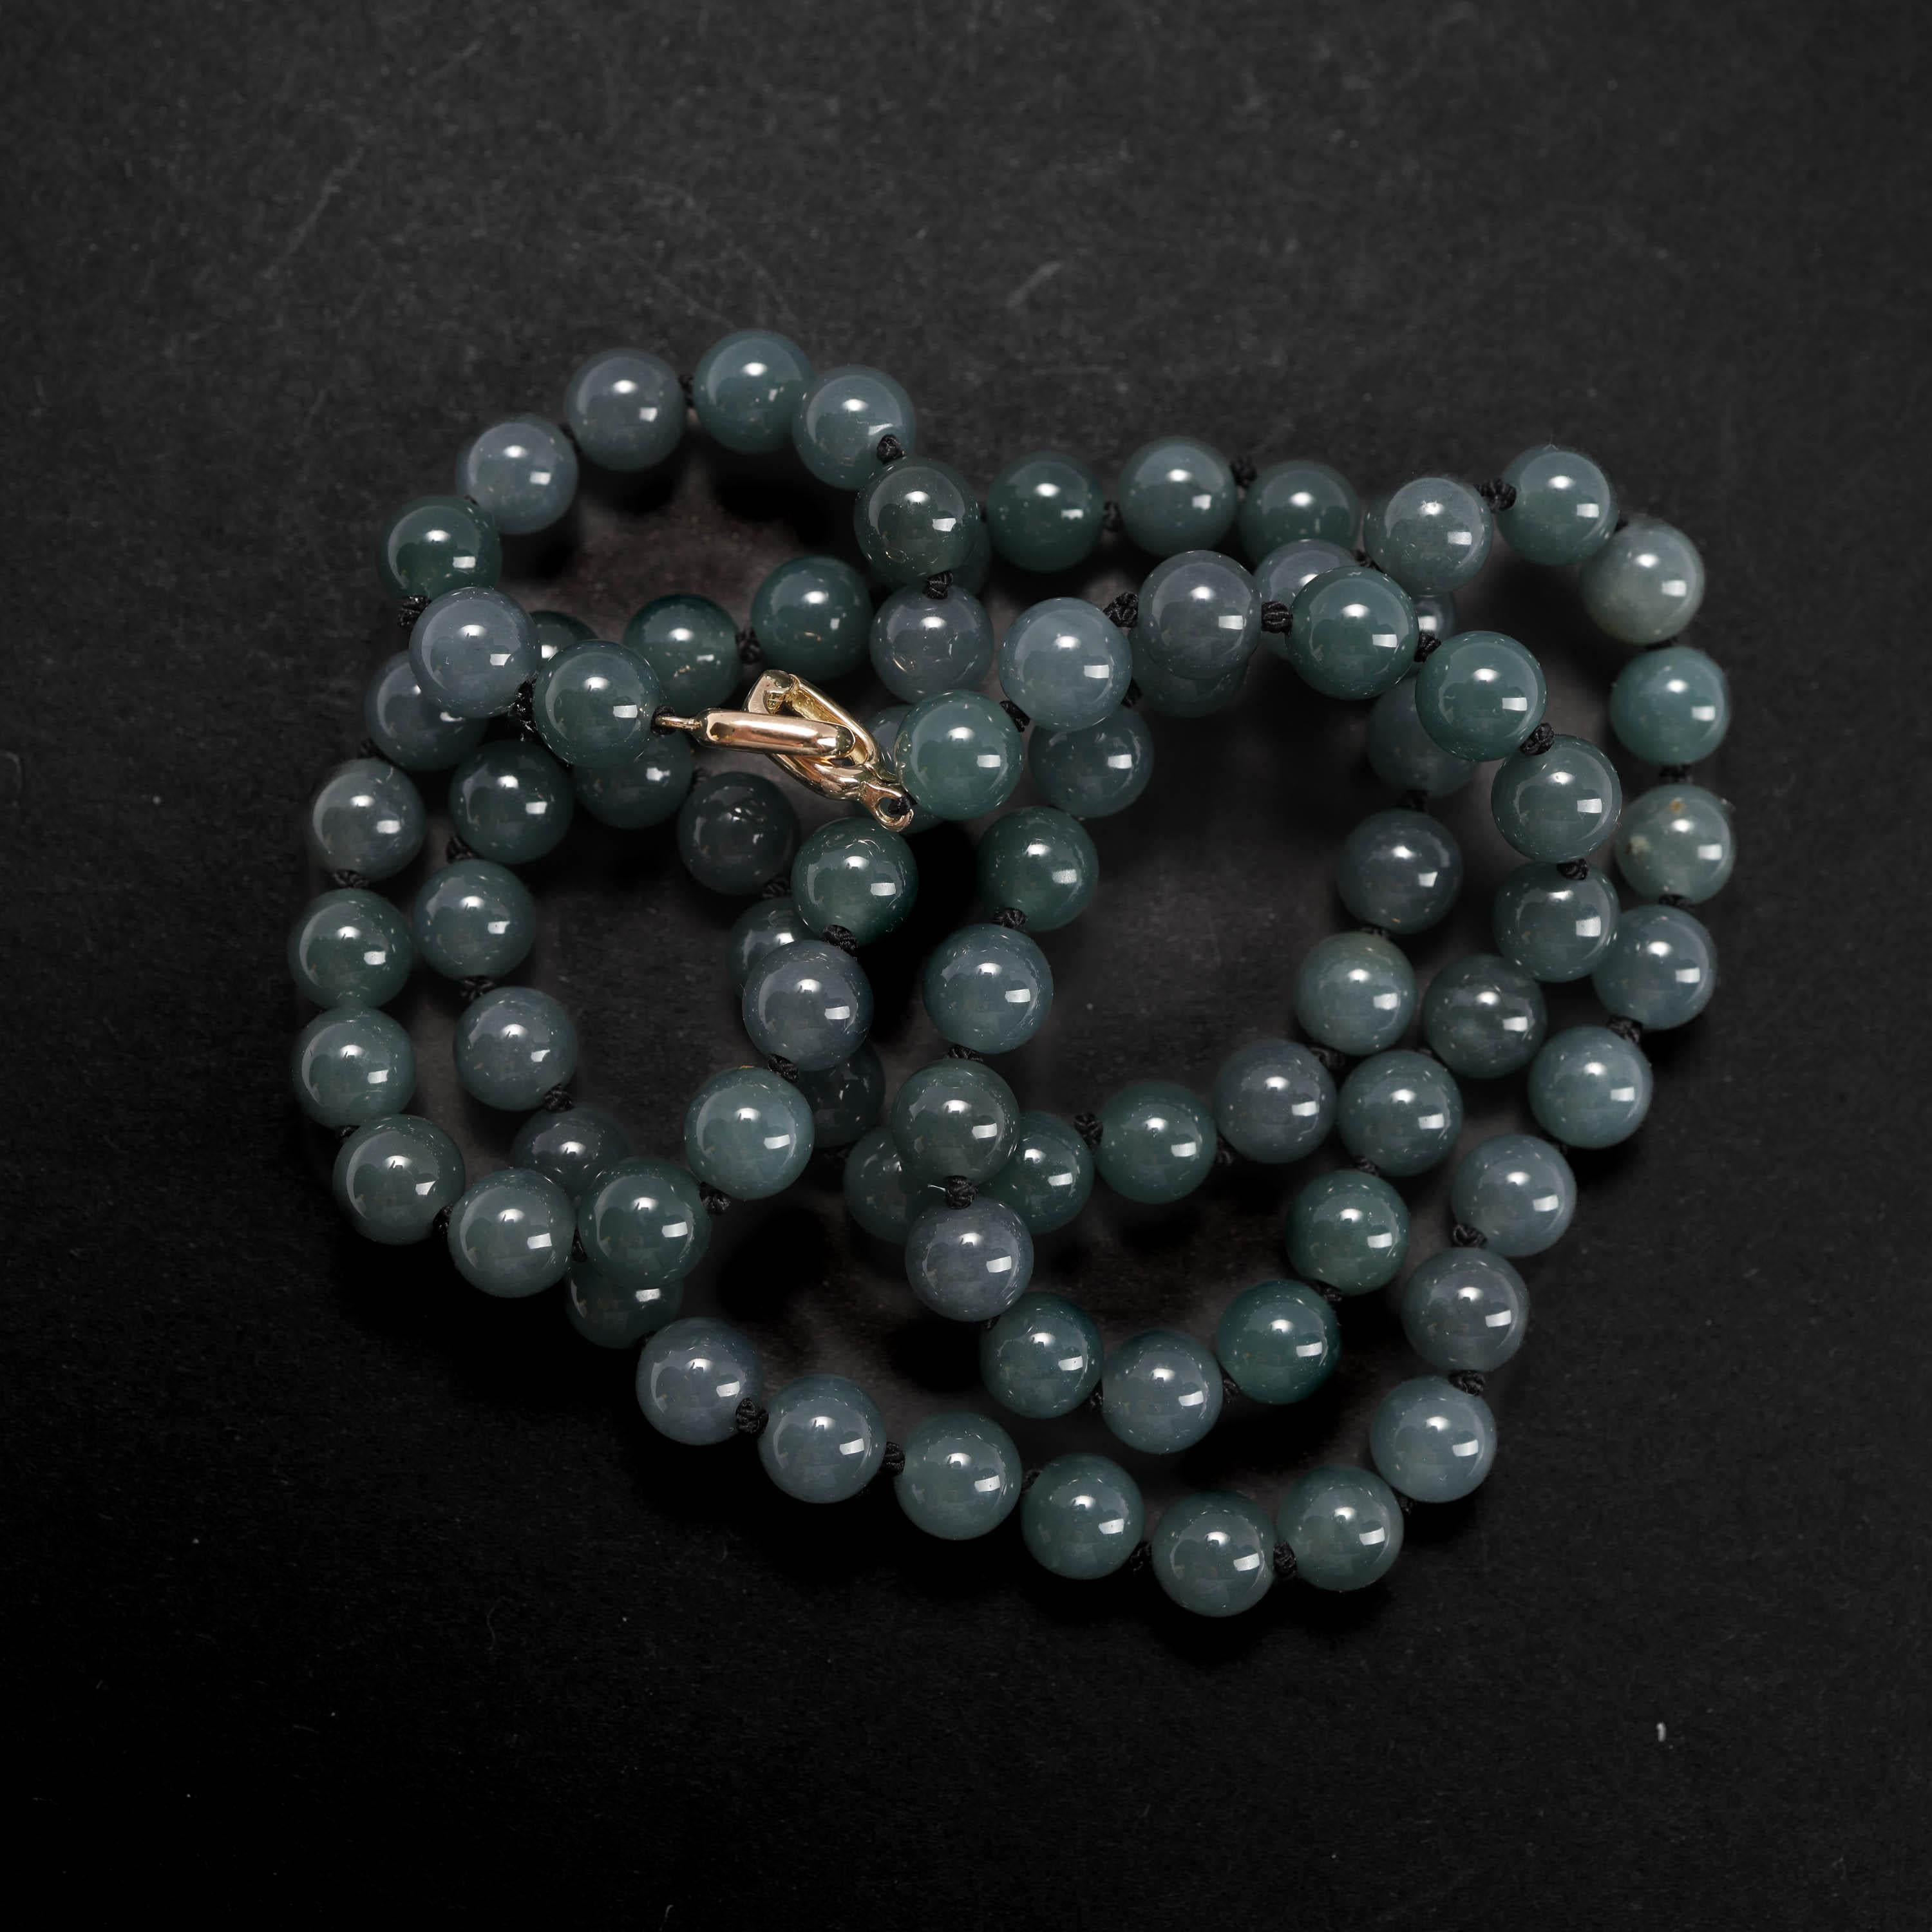 Jade-Halskette Transluzent Grün-Blau zertifiziert unbehandelt, neu, 25